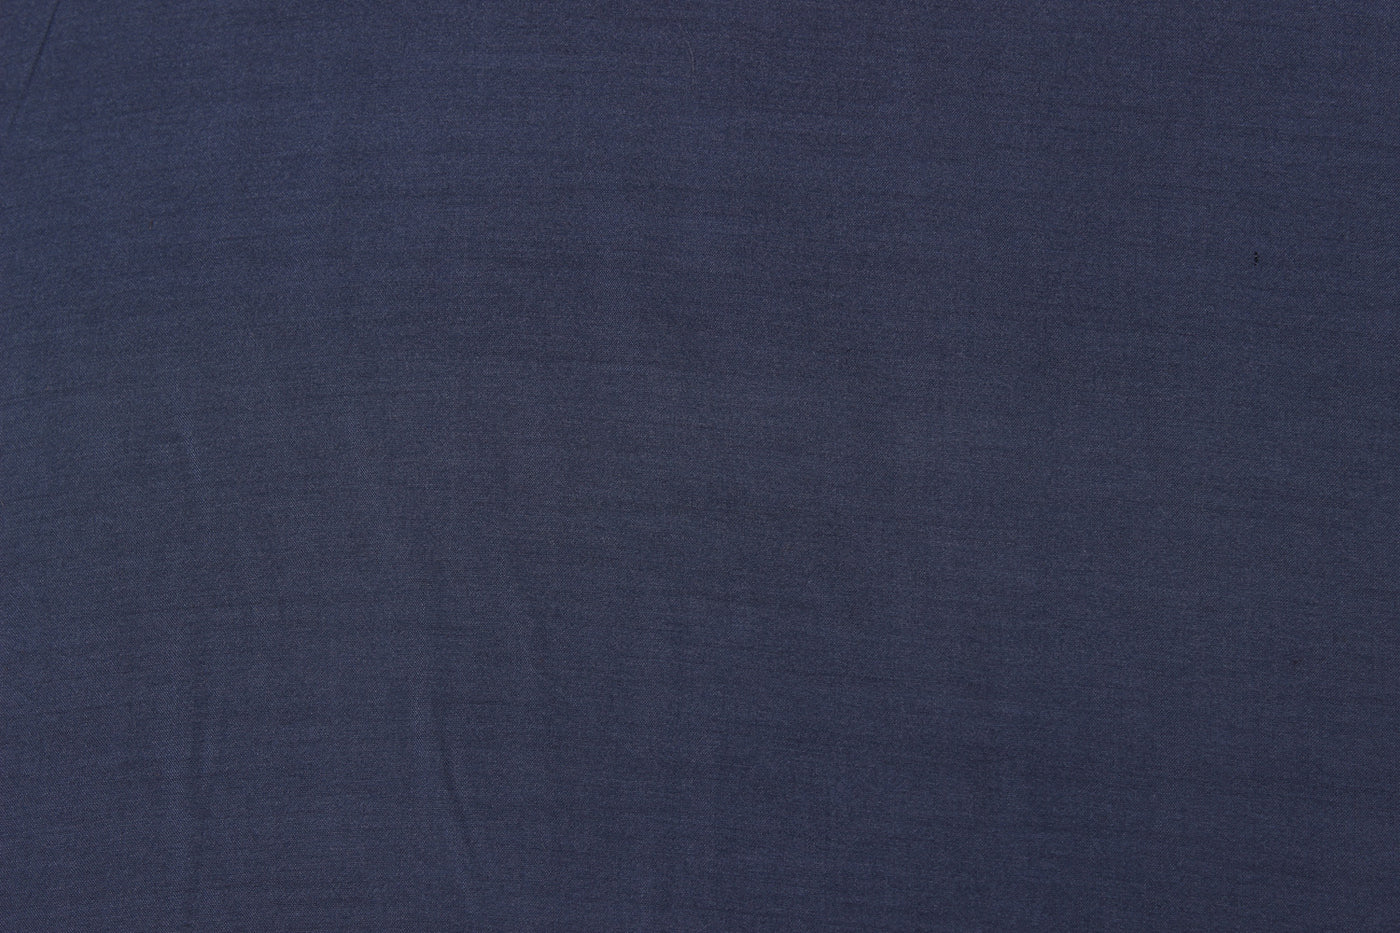 steal-blue-plain-rayon-silk-fabric-21024618